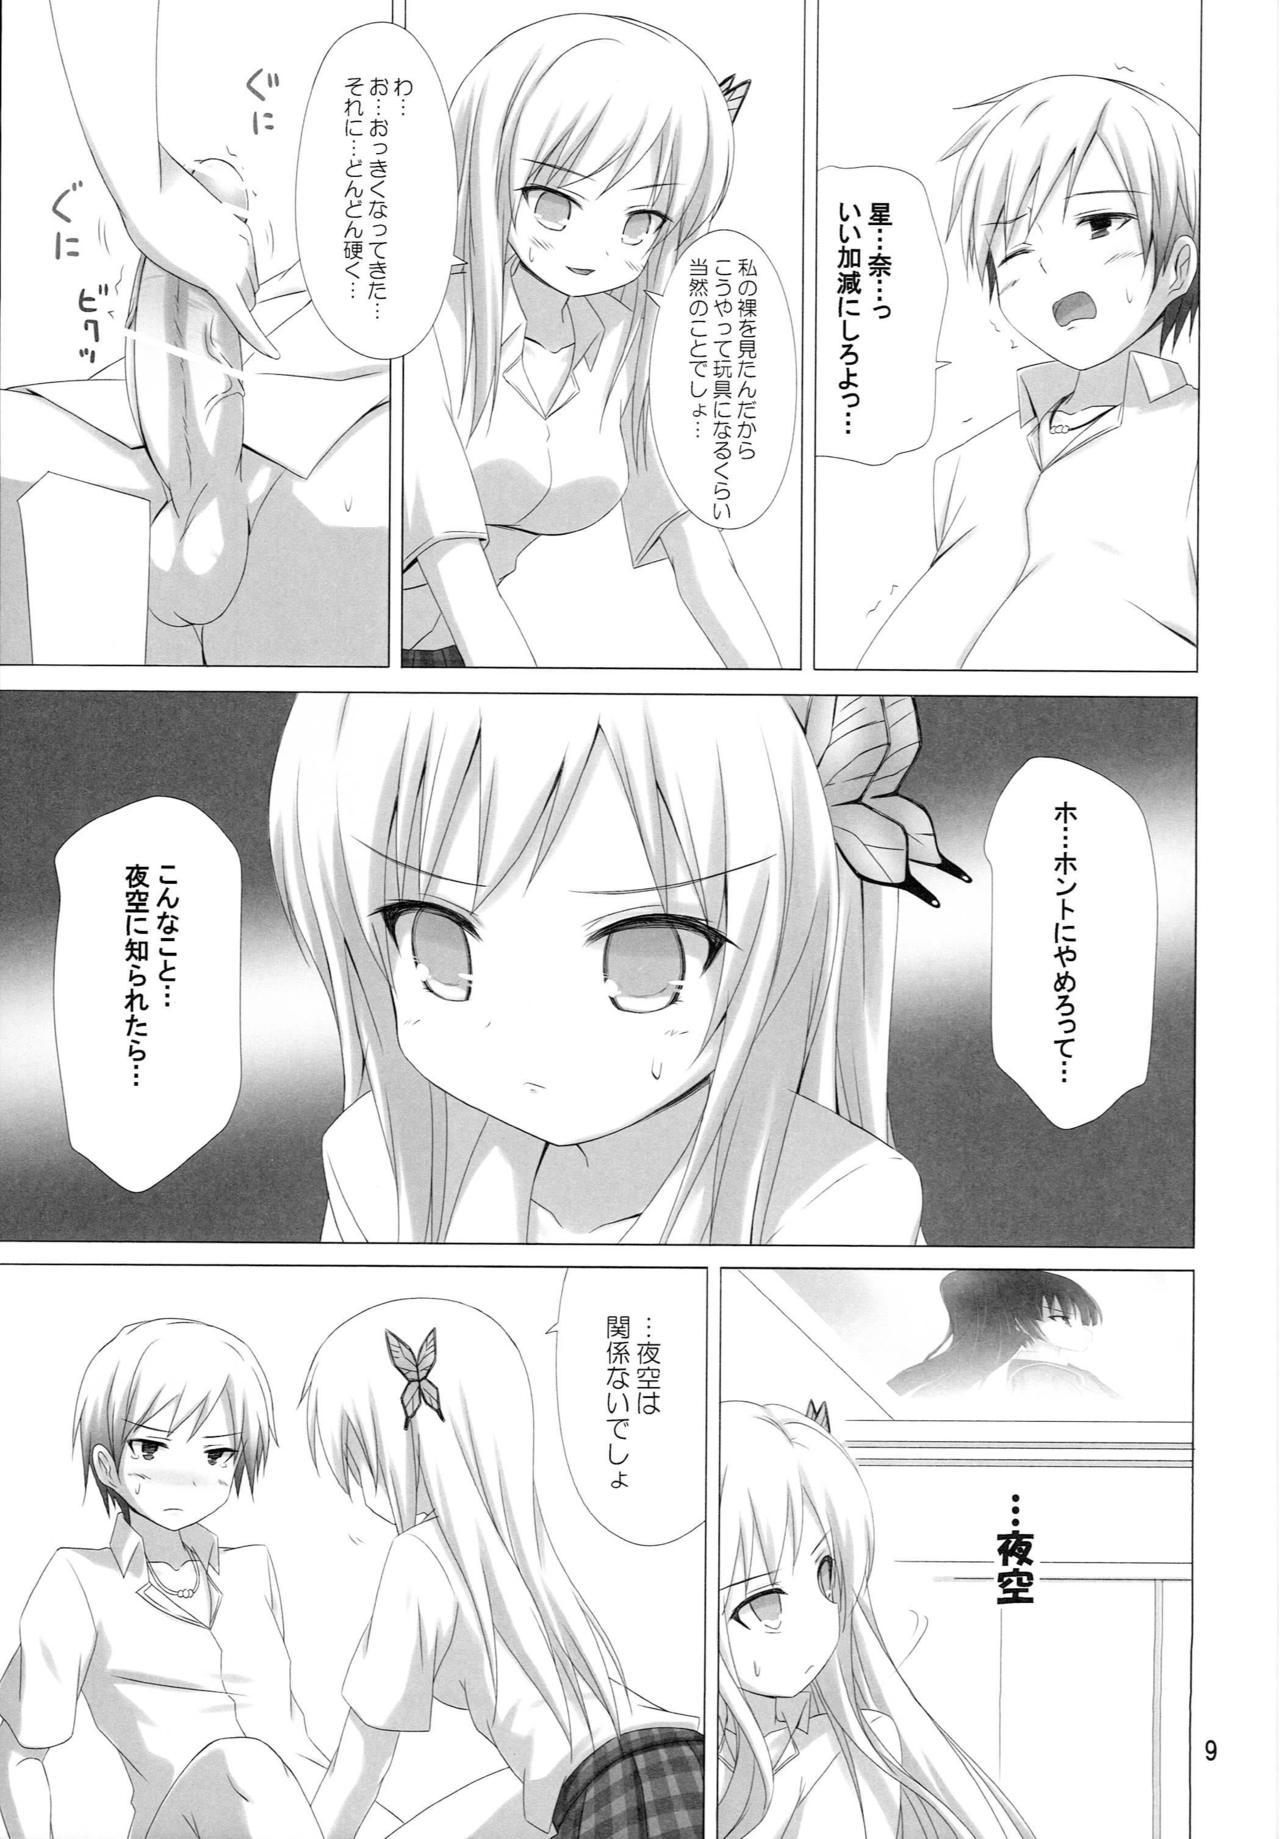 Ftv Girls MORE MEAT - Boku wa tomodachi ga sukunai Sexy Whores - Page 8